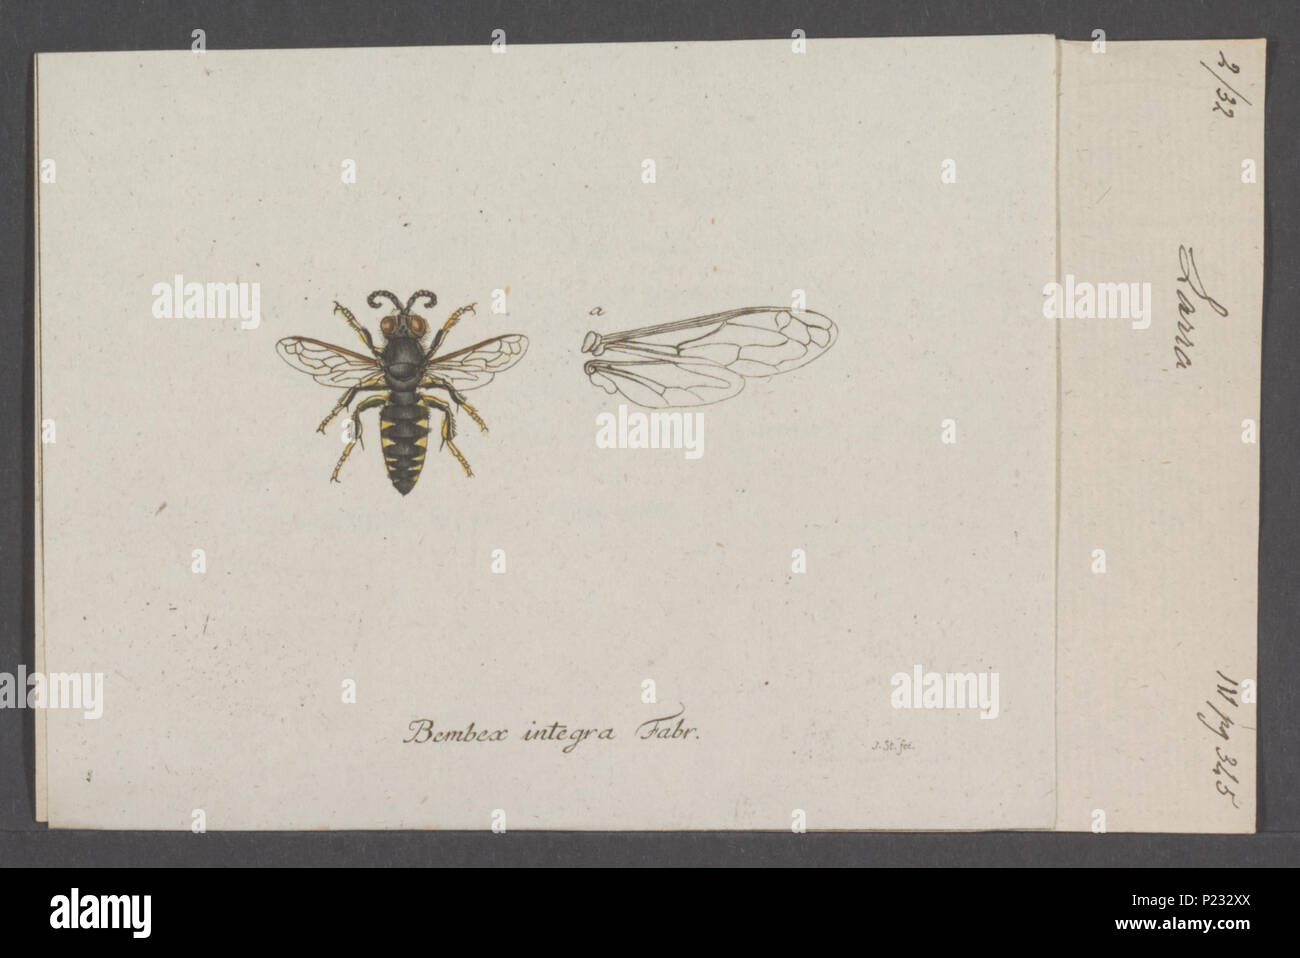 . 172 Larra Larra - Imprimer - Zoologica 2e moitié - Collections spéciales de l'Université d'Amsterdam - UBAINV0274 043 10 0002 Banque D'Images